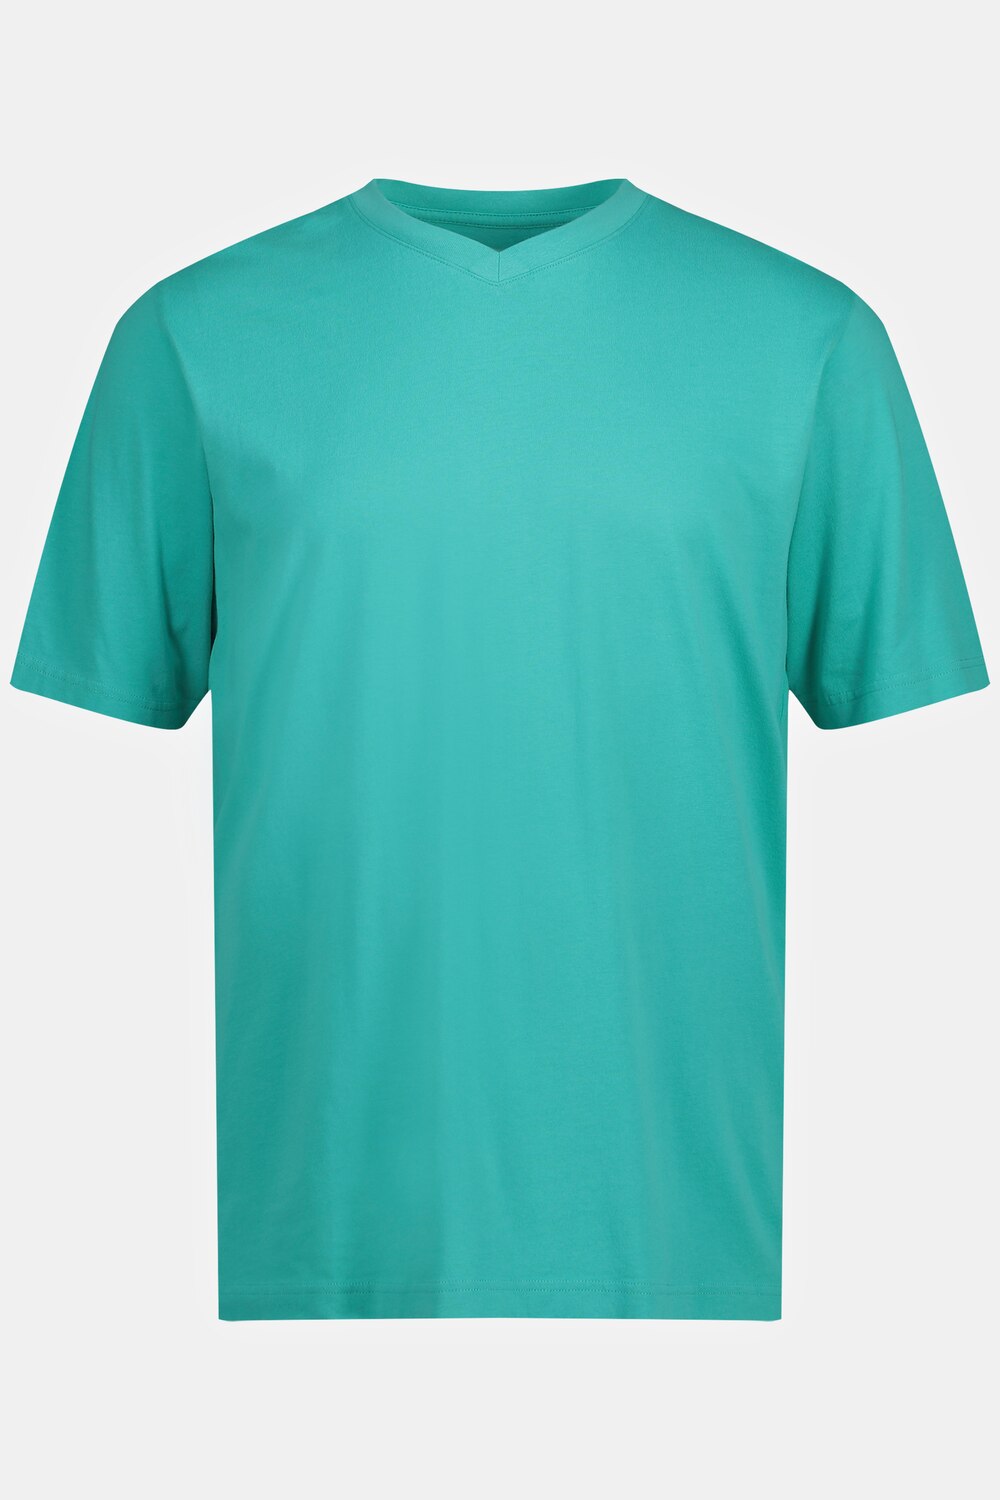 Grote Maten T-shirt, Heren, turquoise, Maat: 3XL, Katoen, JP1880